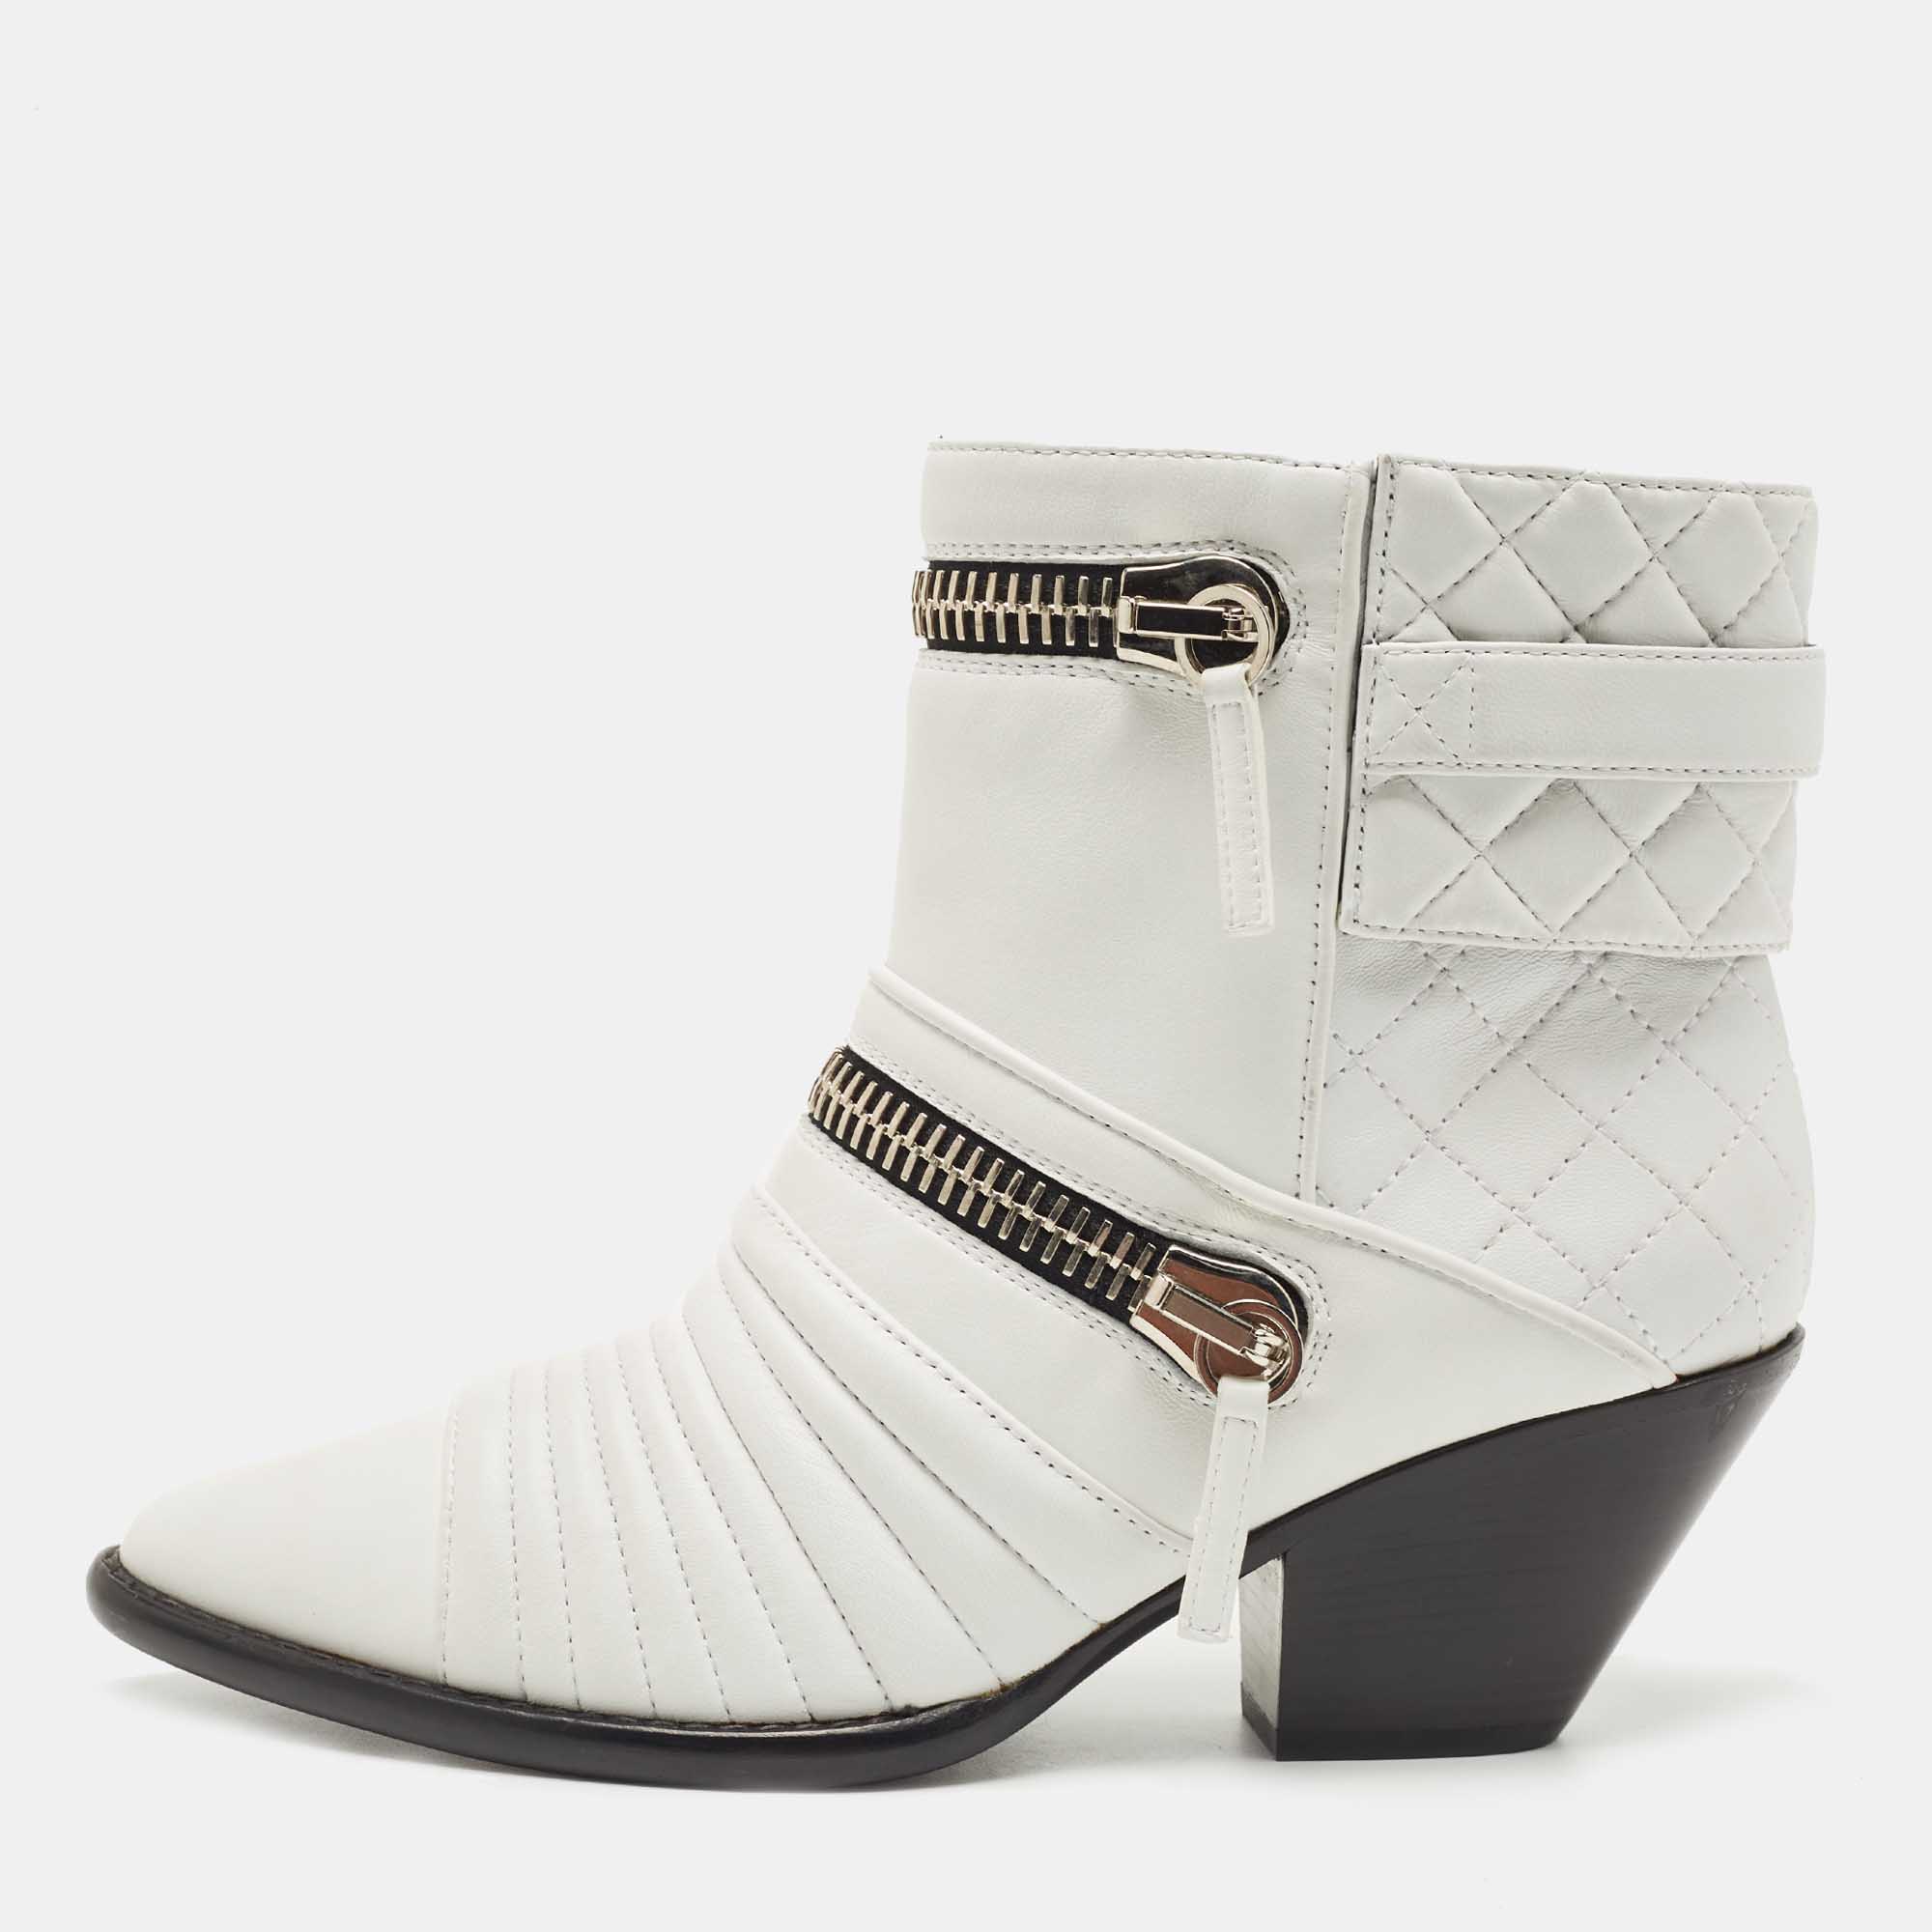 Giuseppe zanotti white leather olinda ankle boots size 39